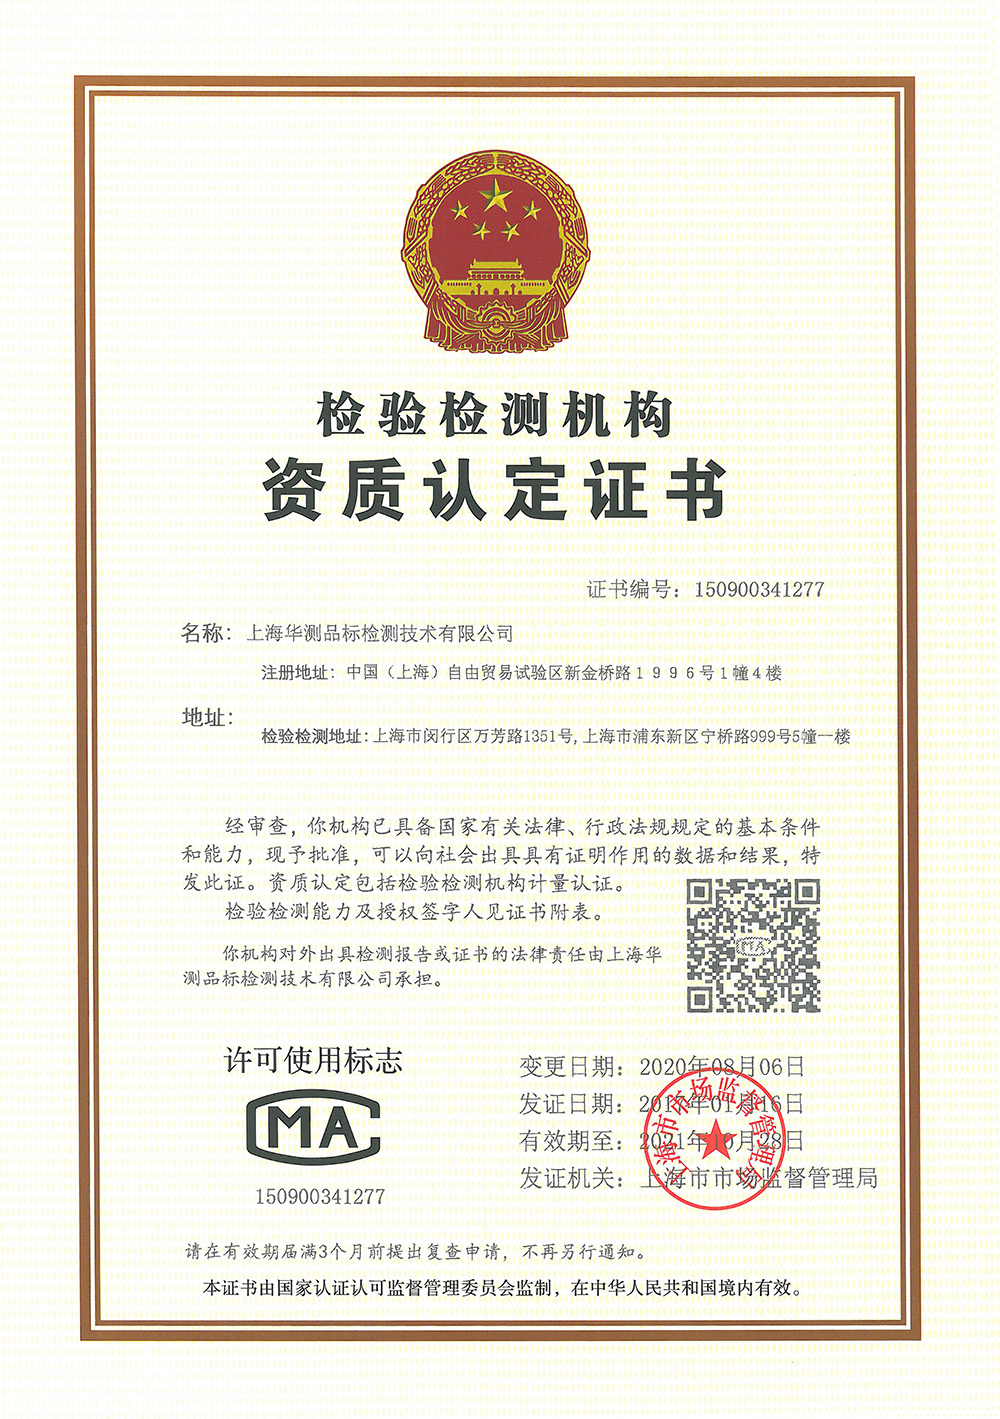 上海品标CMA证书